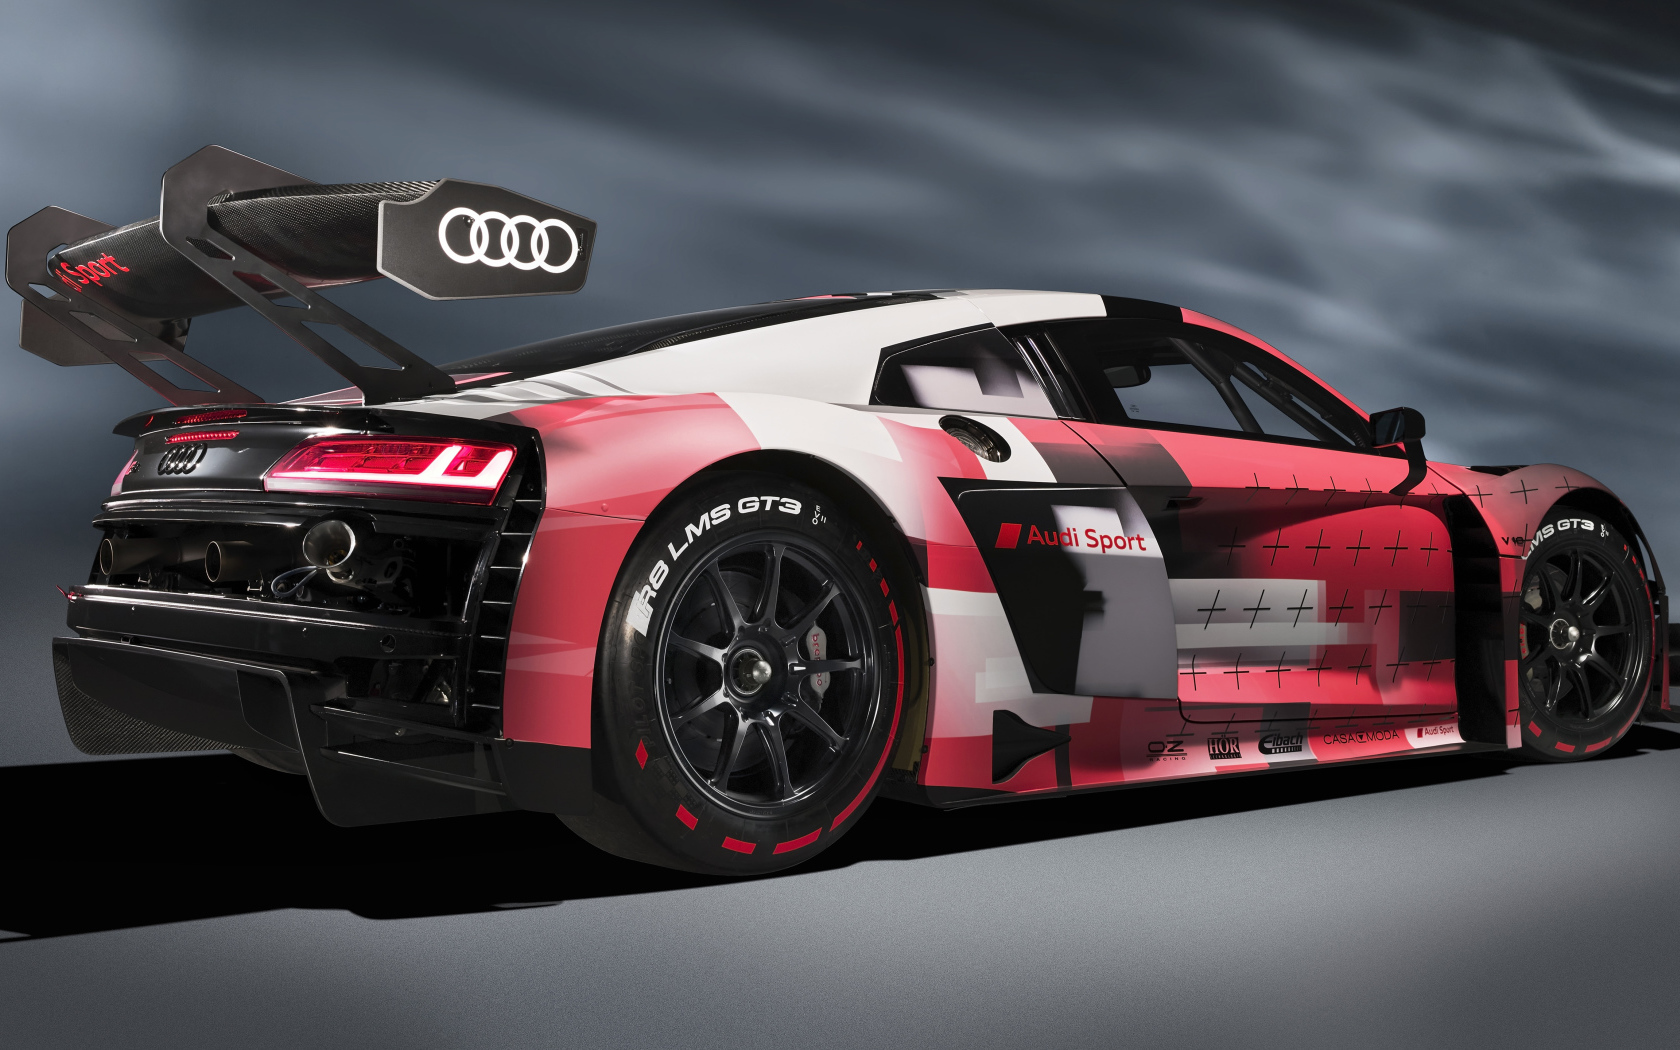 Гоночный автомобиль Audi R8 LMS GT3 Evo II 2022 года на сером фоне